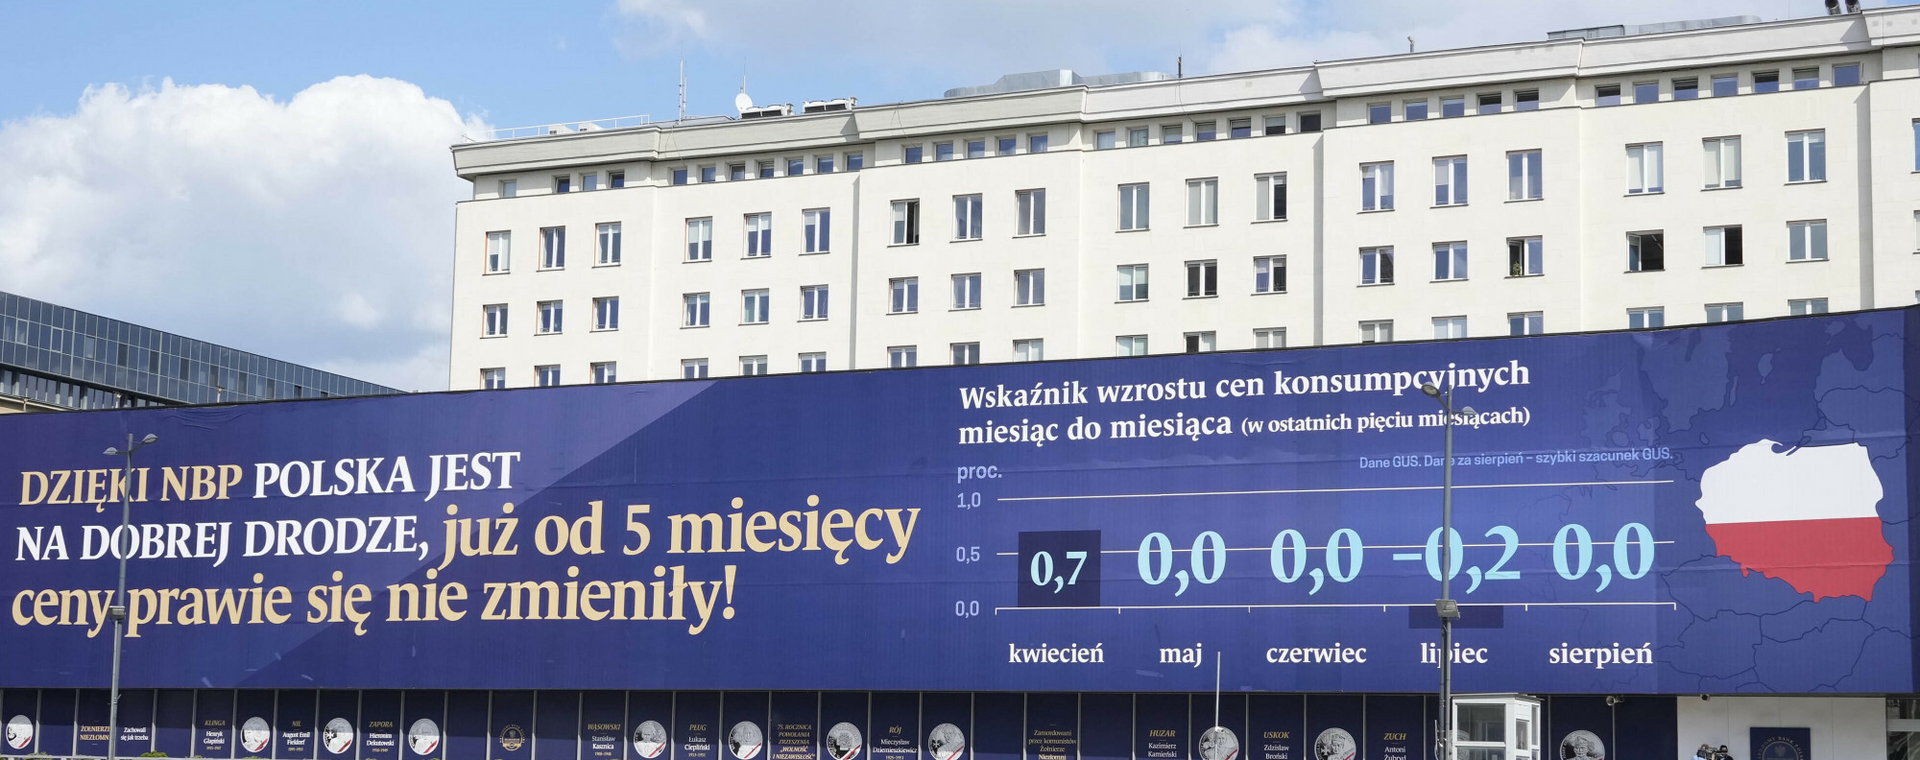 Baner o walce z inflacją na budynku Narodowego Banku Polskiego w Warszawie